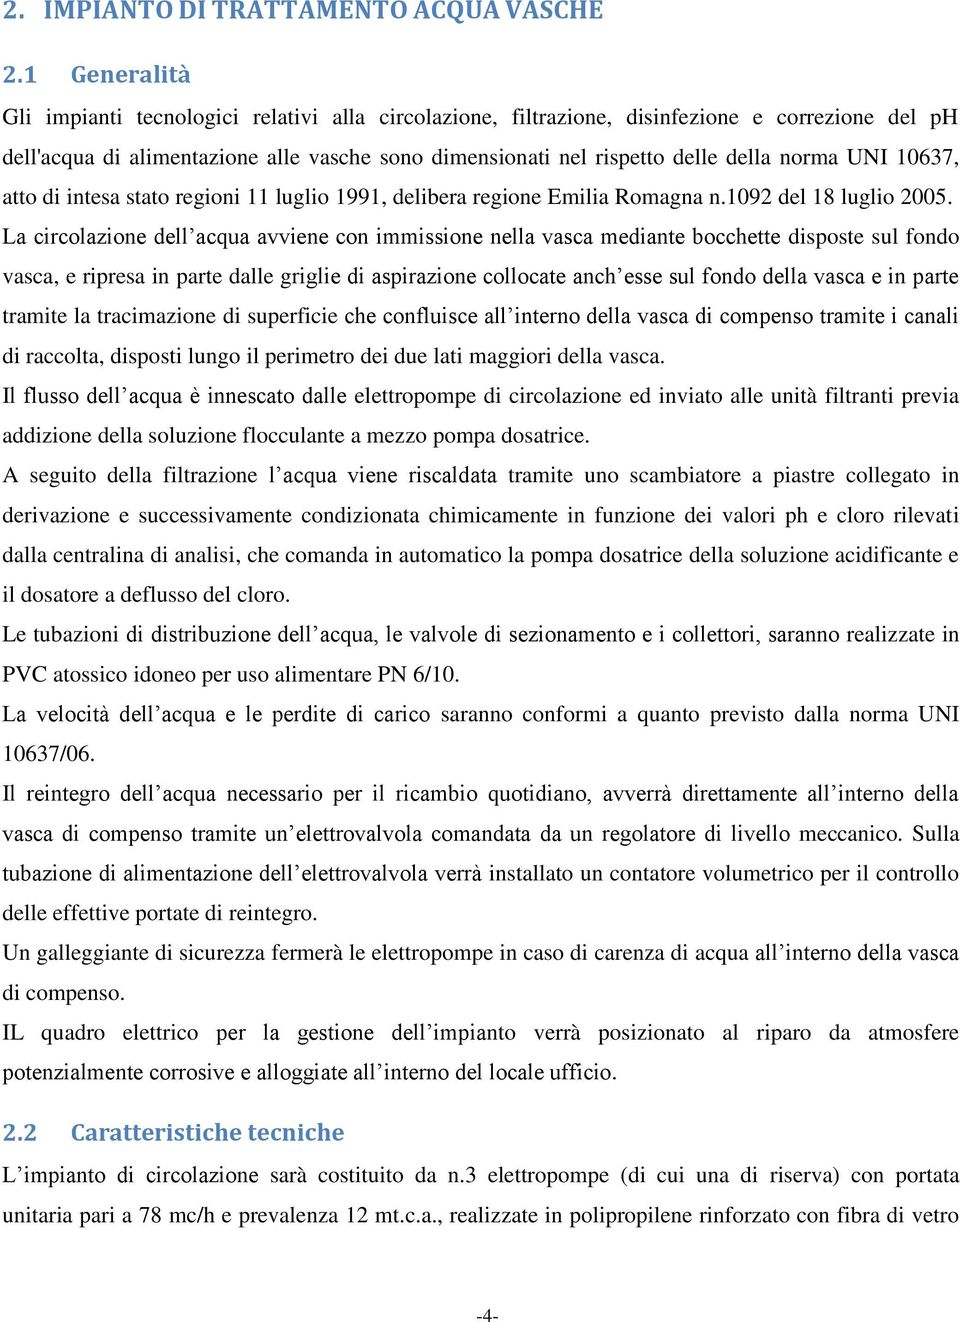 norma UNI 10637, atto di intesa stato regioni 11 luglio 1991, delibera regione Emilia Romagna n.1092 del 18 luglio 2005.